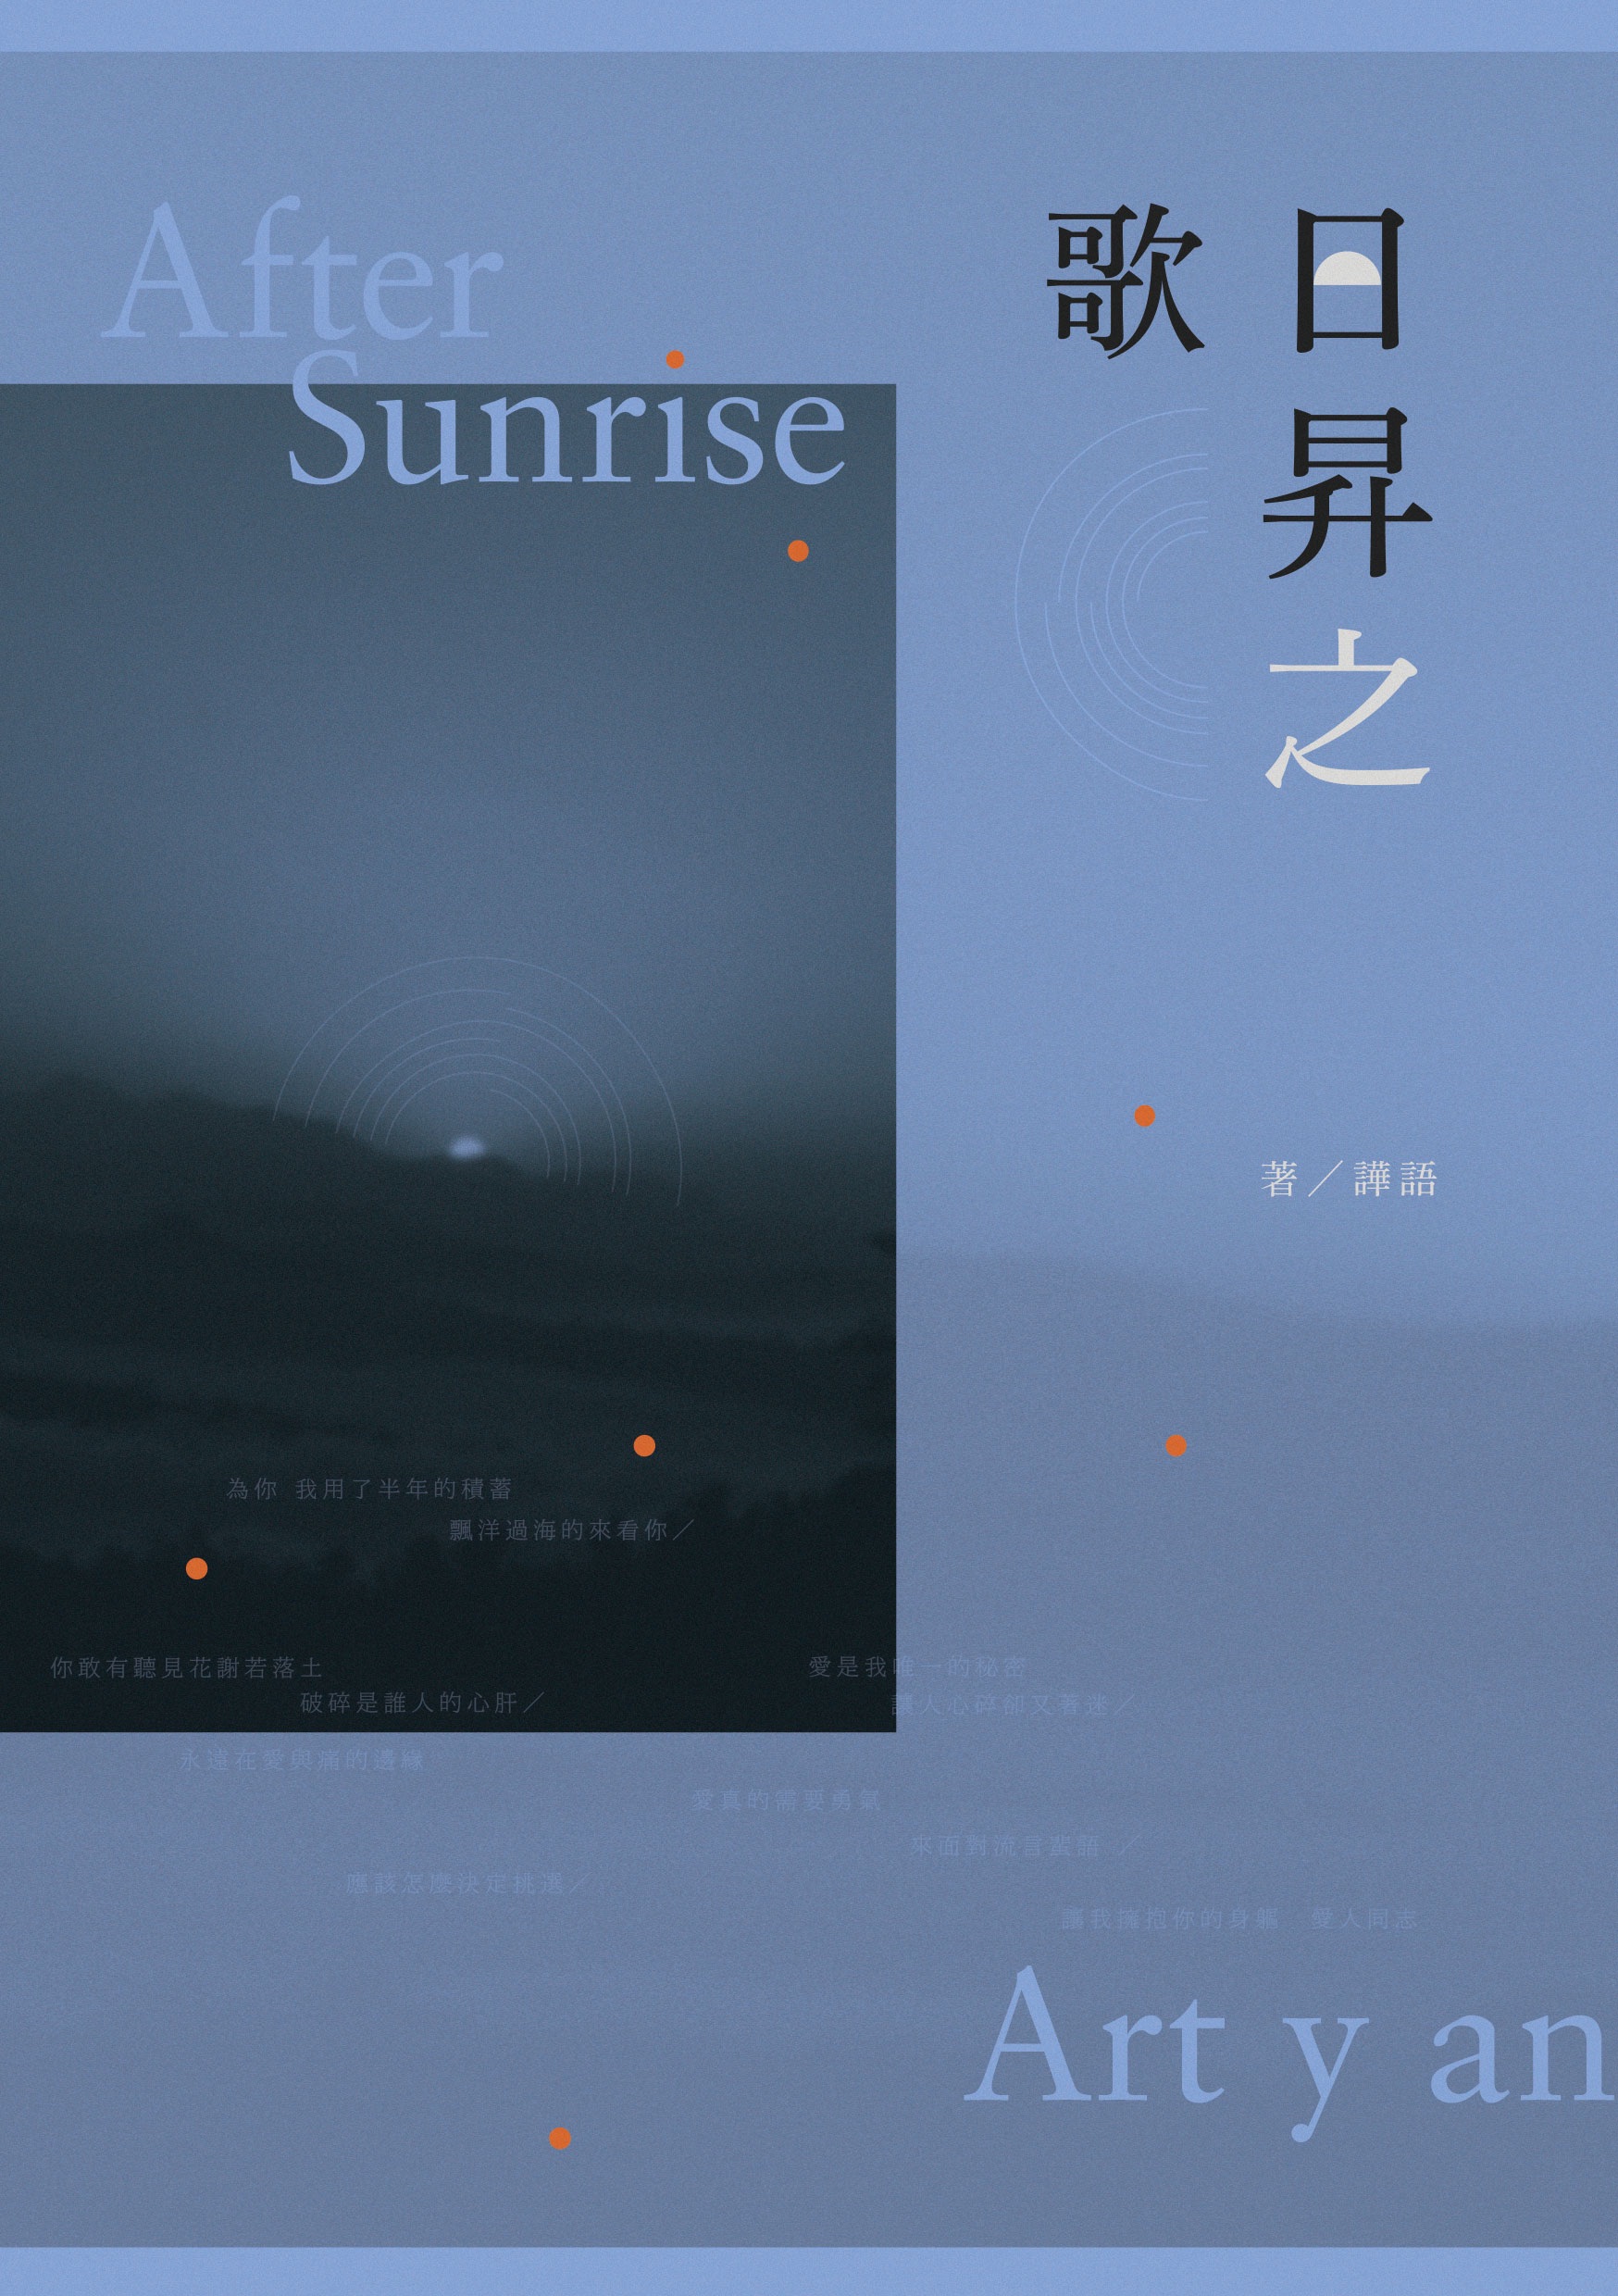 原創既刊 - 日昇之歌 After Sunrise